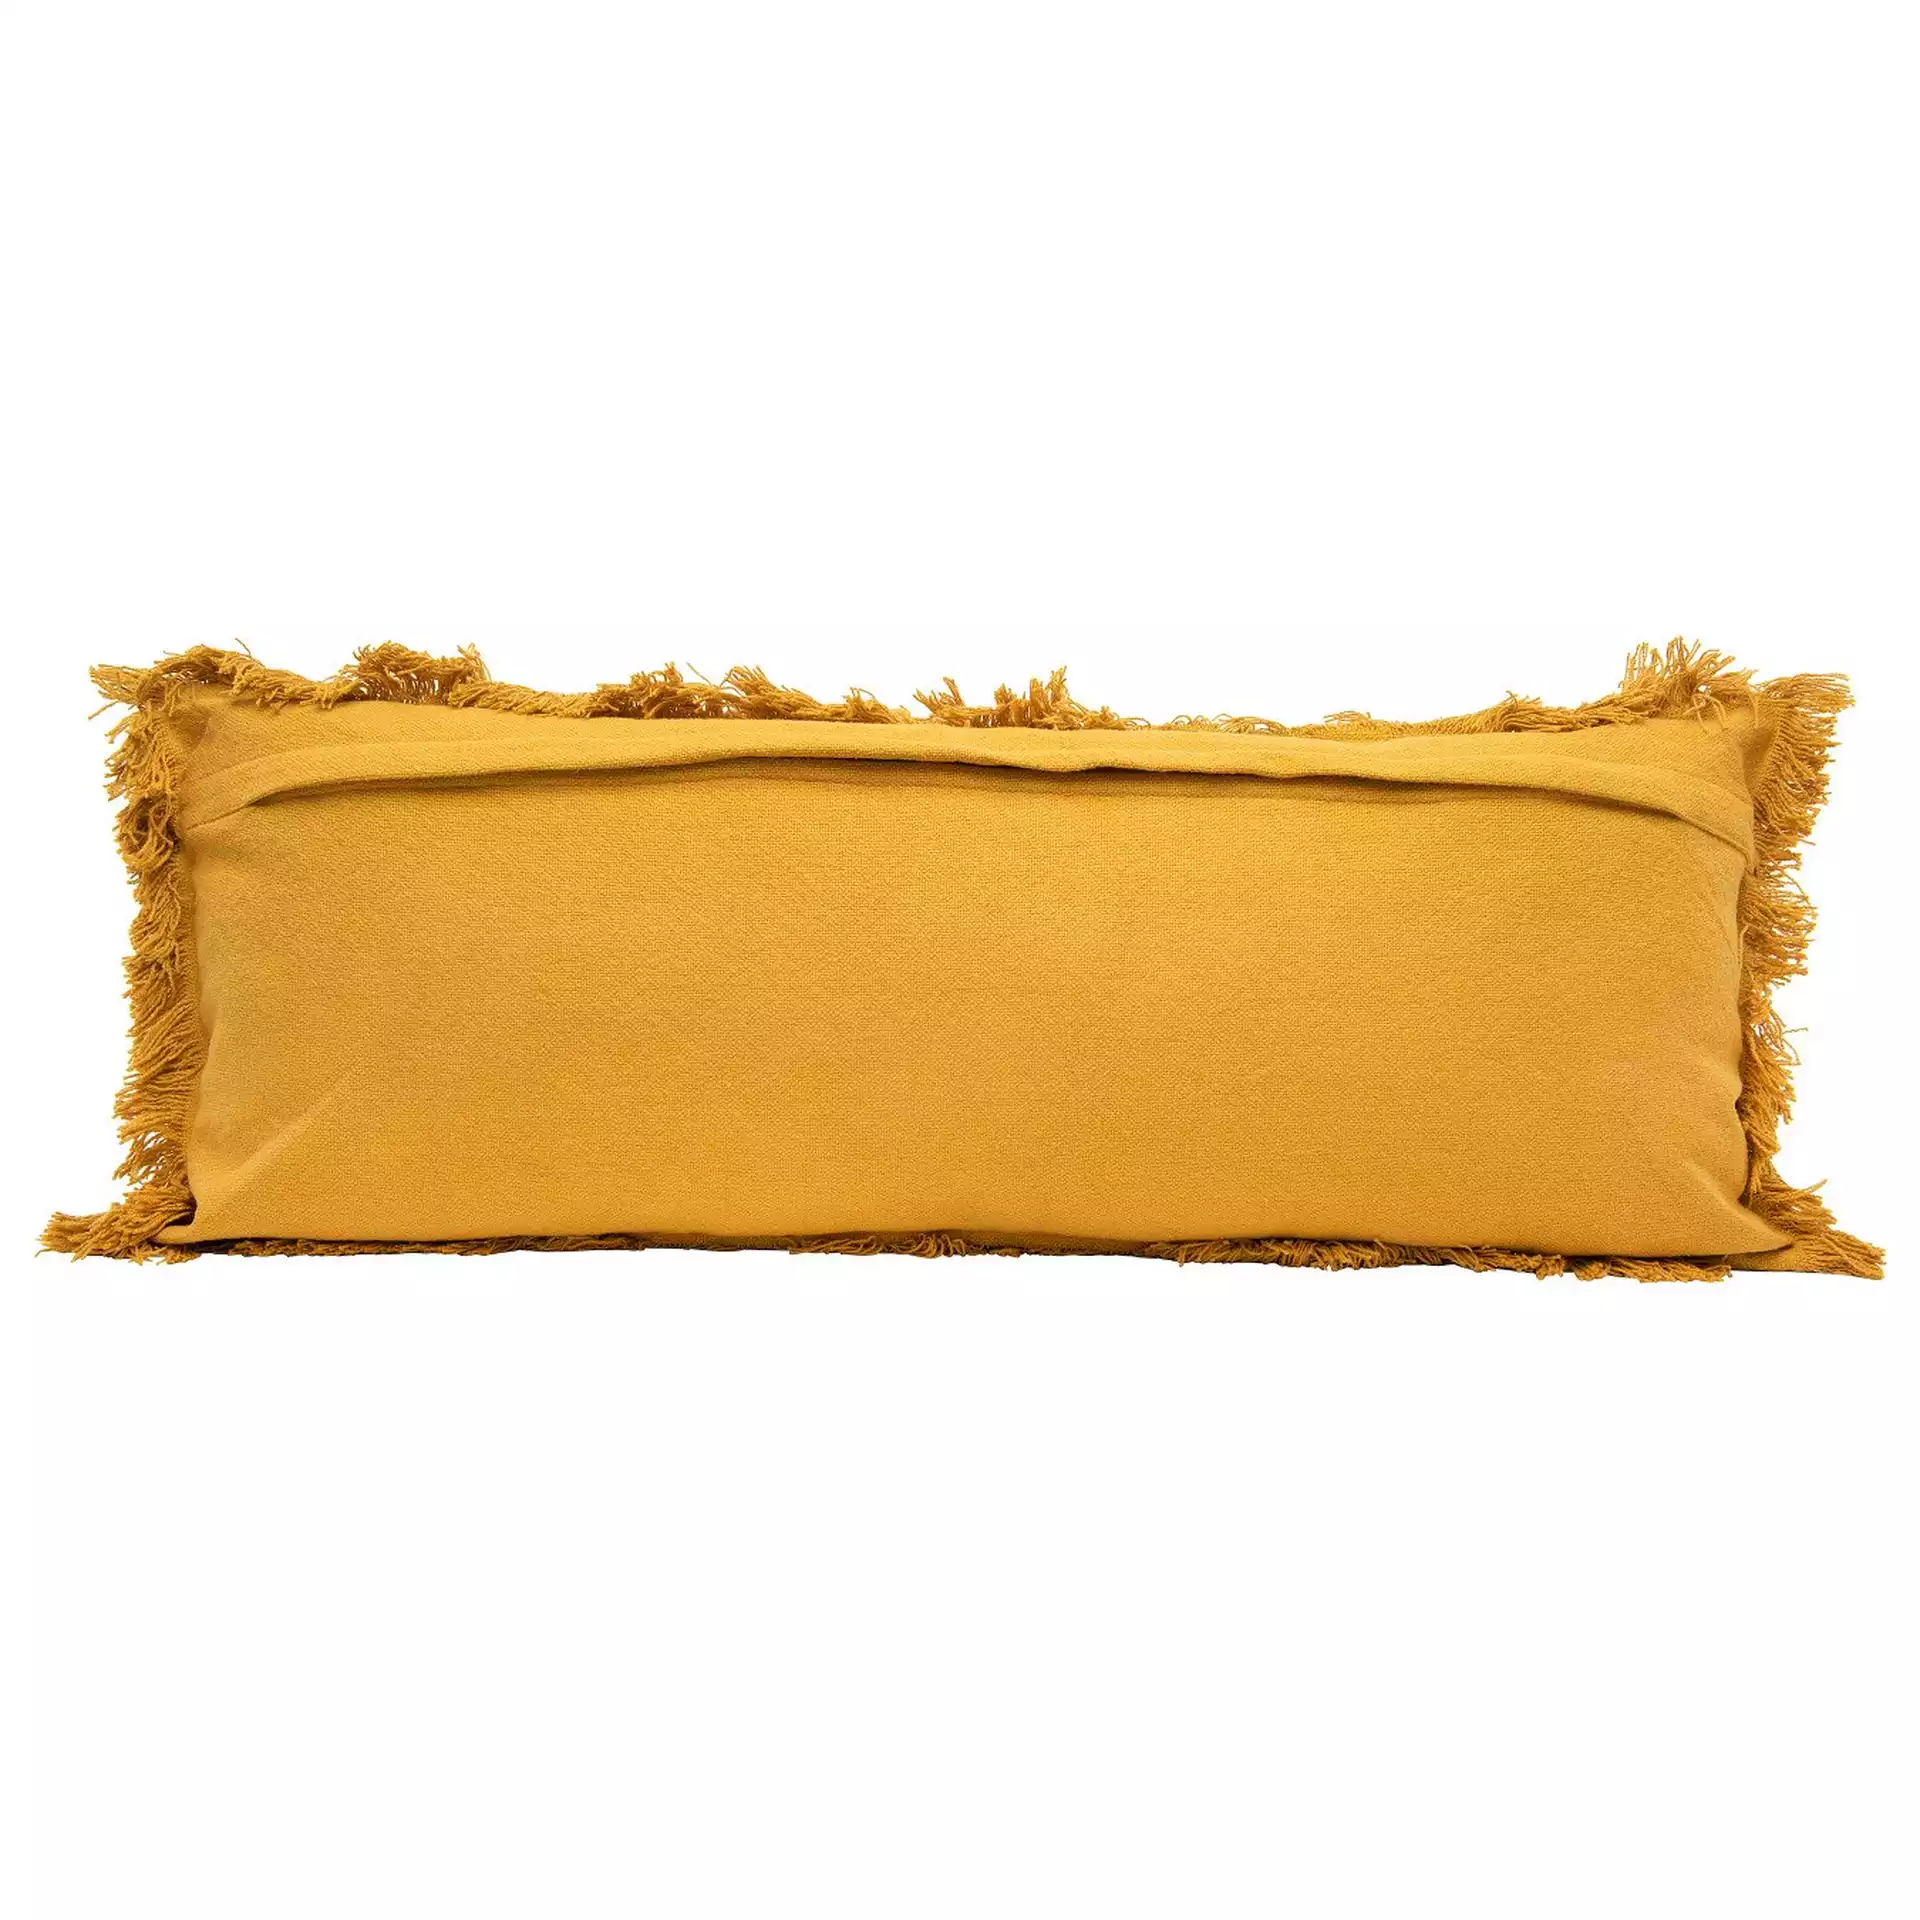 Rectangle Lumbar Pillow with Fringe, Mustard Cotton, 36" x 14"